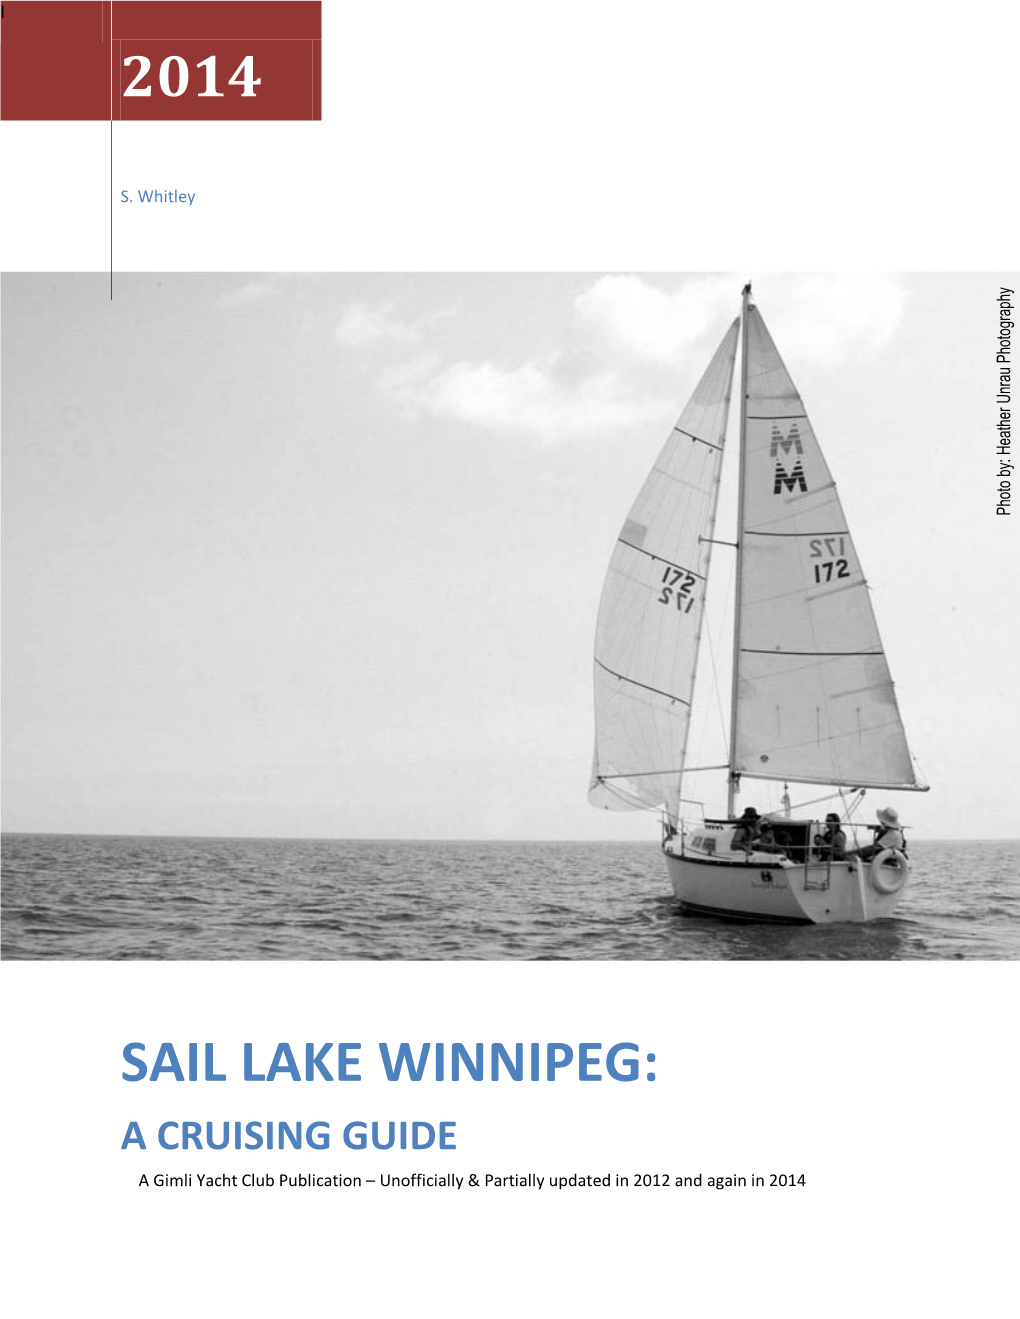 Sail Lake Winnipeg